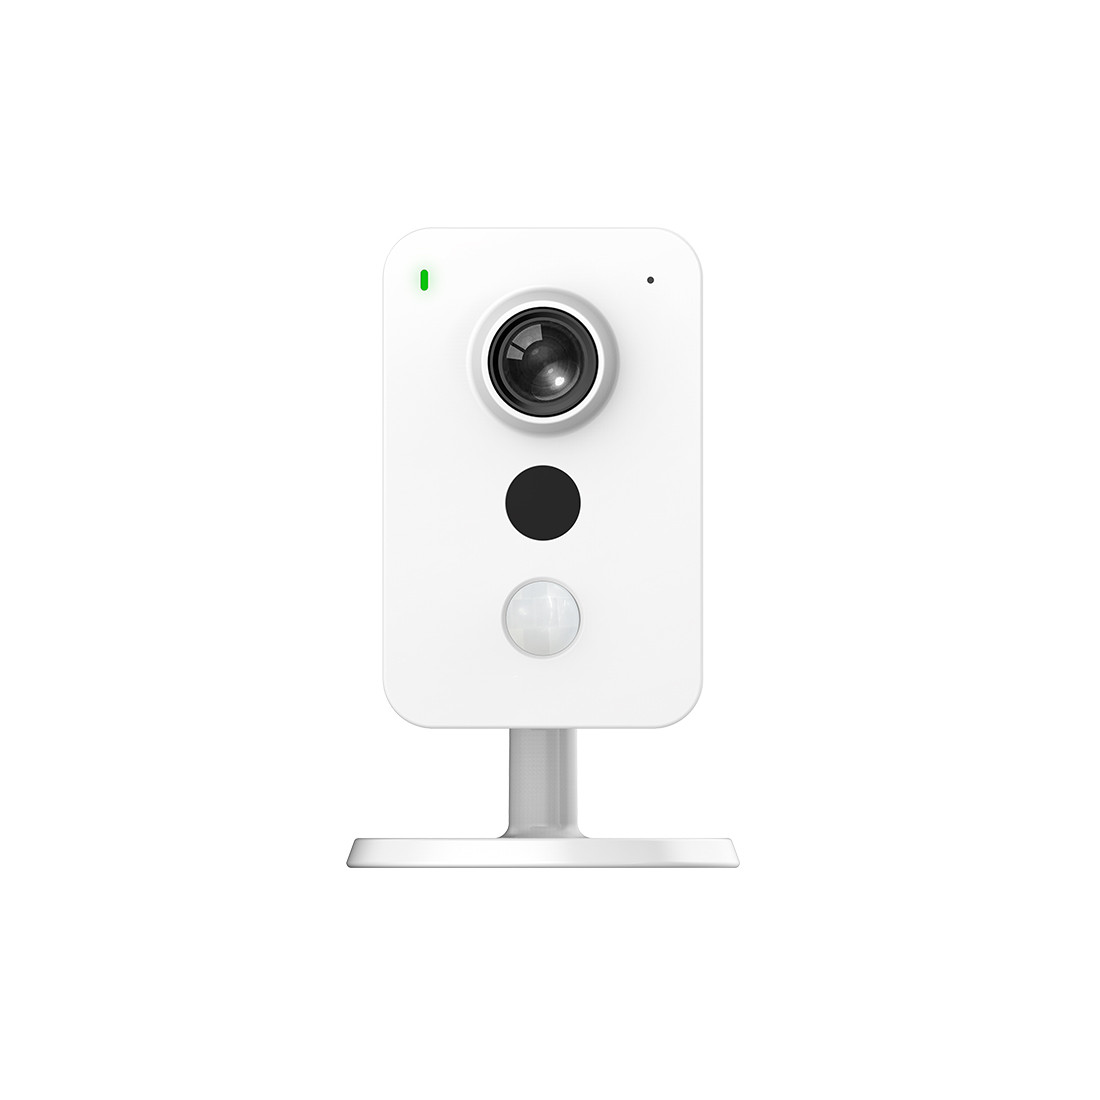 Wi-Fi видеокамера Imou IPC-K22